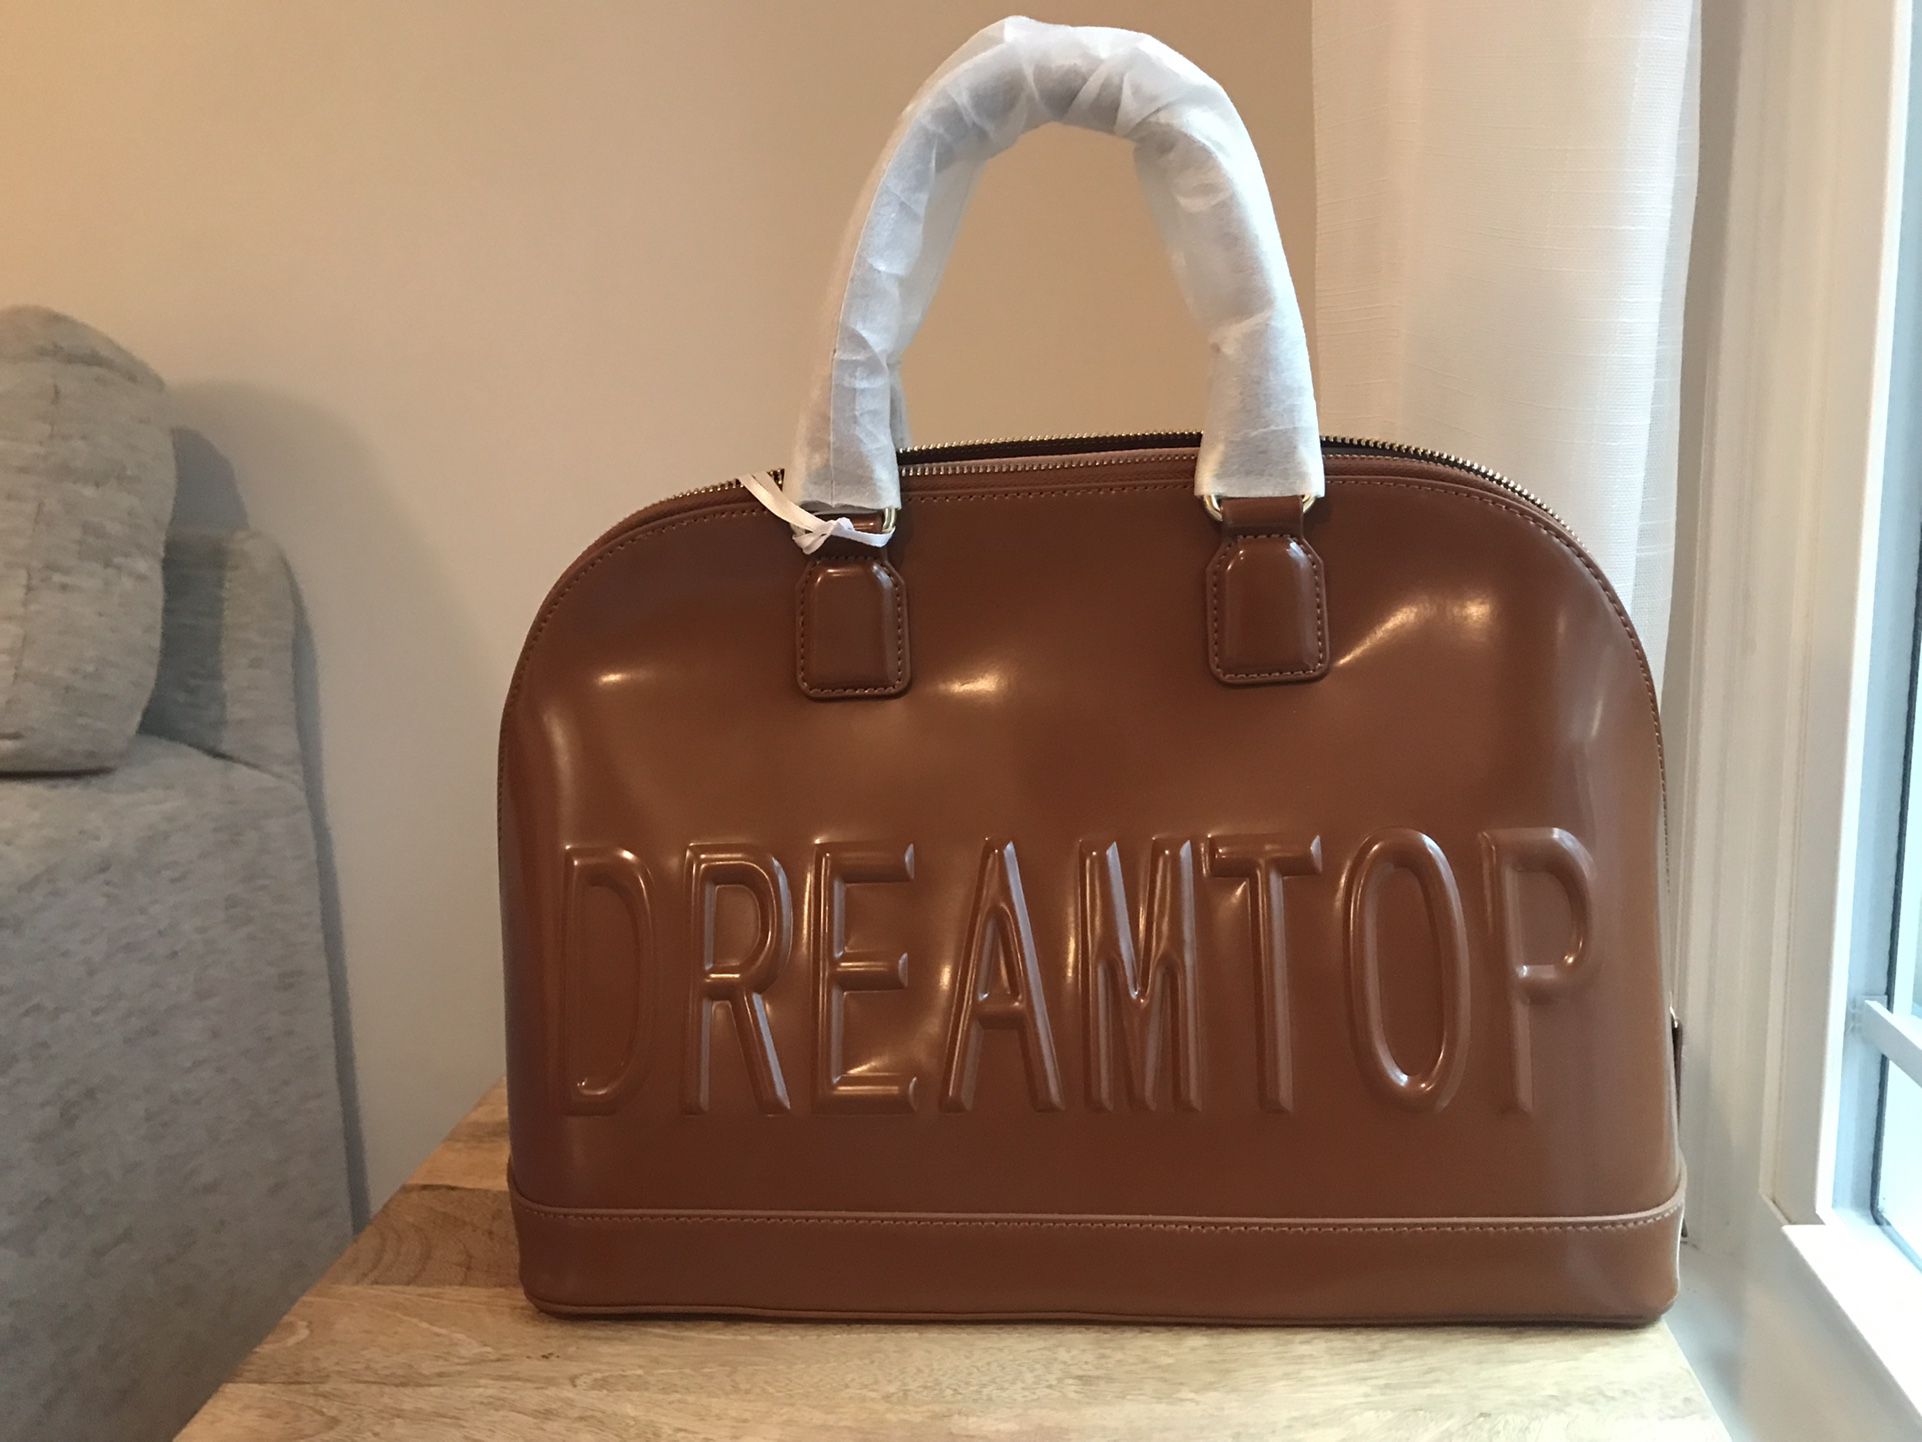 Dreamtop handbag 